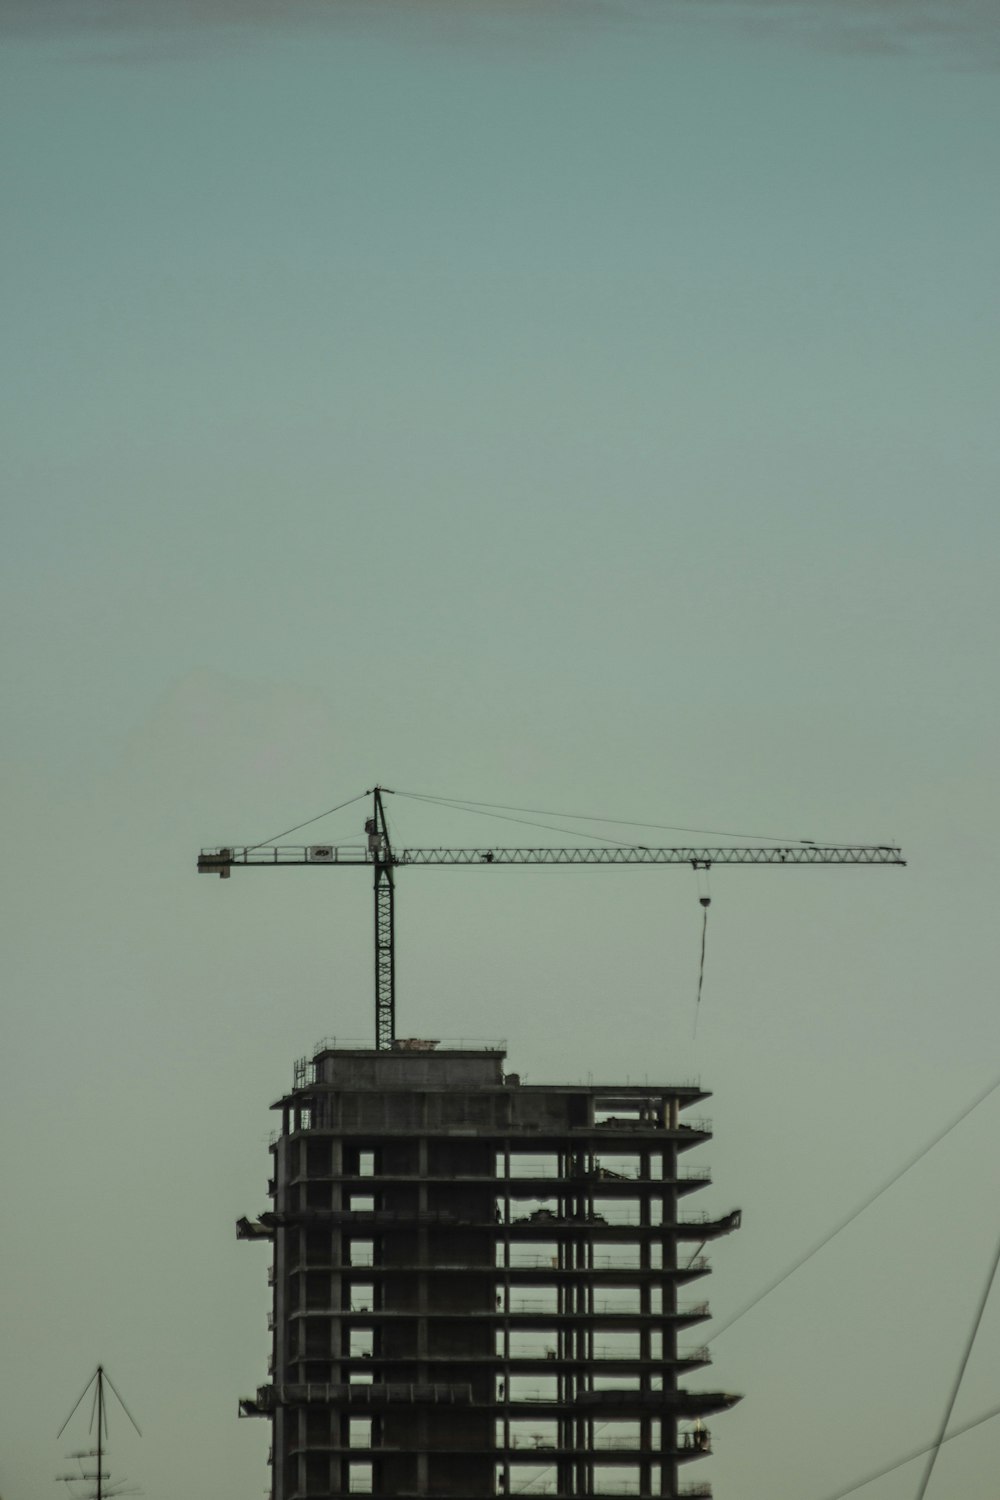 black crane under blue sky during daytime